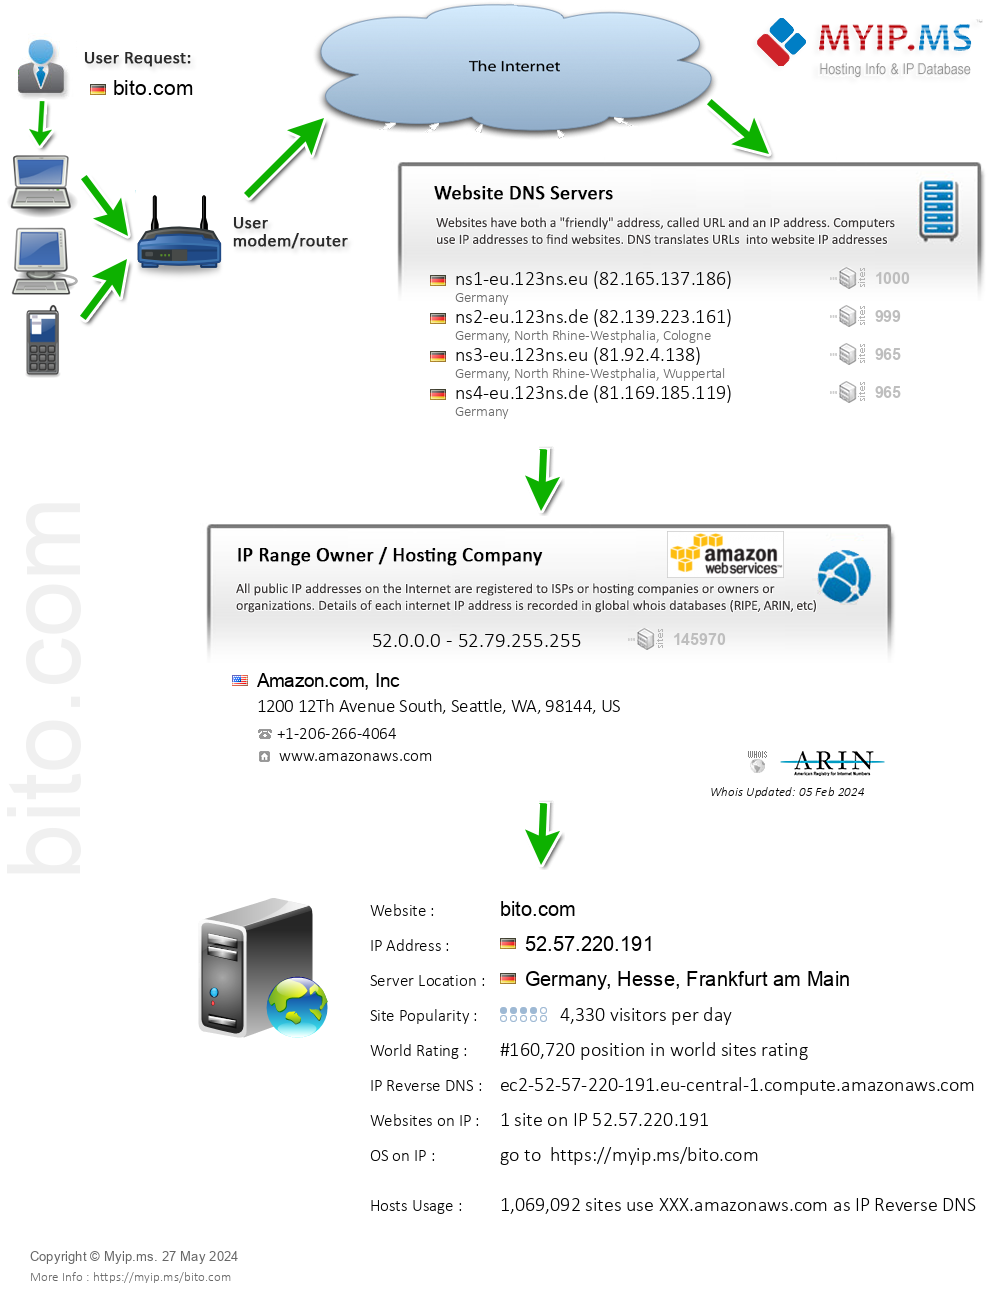 Bito.com - Website Hosting Visual IP Diagram